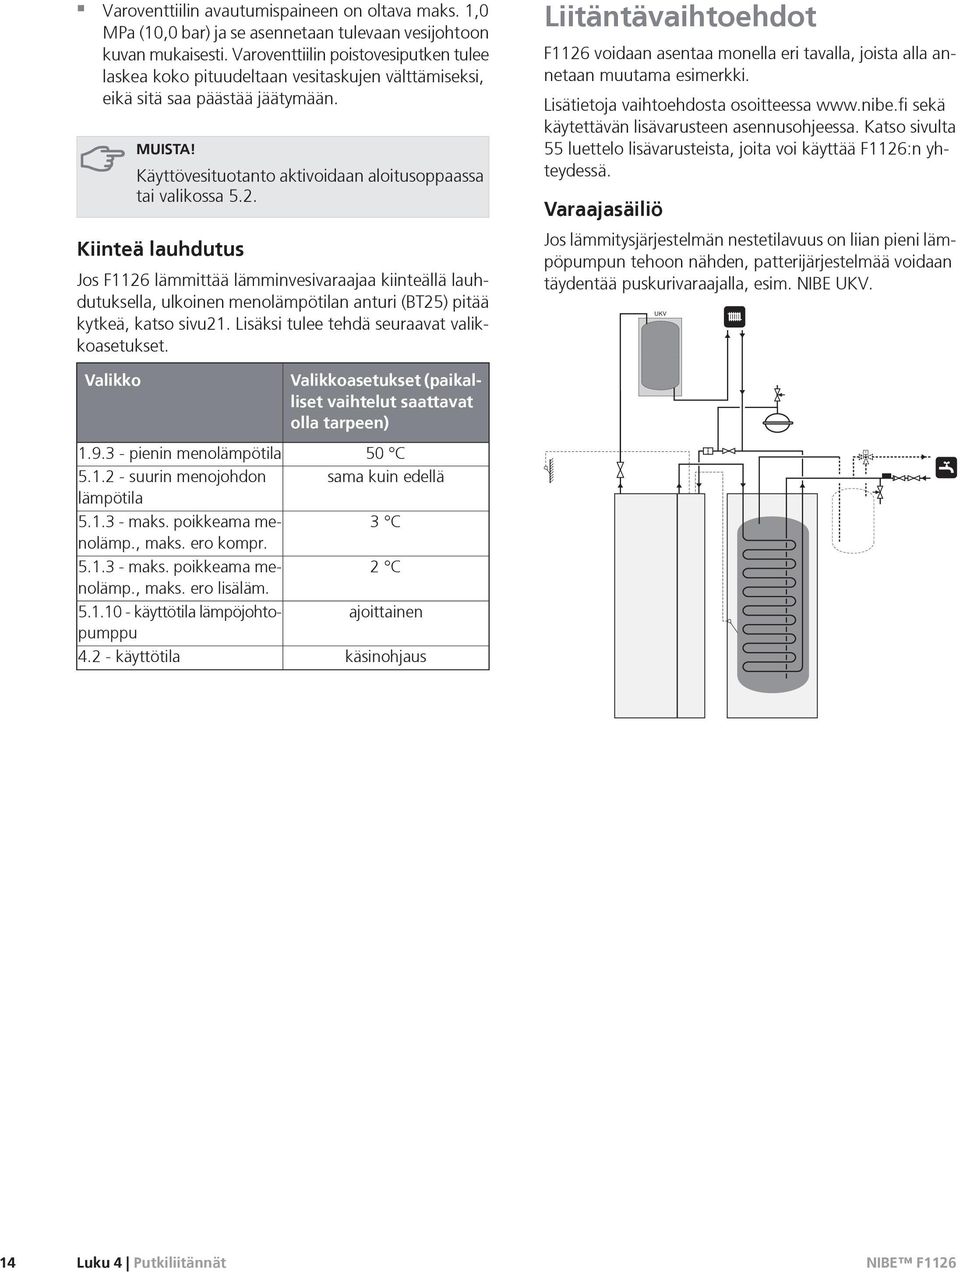 Kiinteä lauhdutus Jos F1126 lämmittää lämminvesivaraajaa kiinteällä lauhdutuksella, ulkoinen menolämpötilan anturi (BT25) pitää kytkeä, katso sivu21. Lisäksi tulee tehdä seuraavat valikkoasetukset.